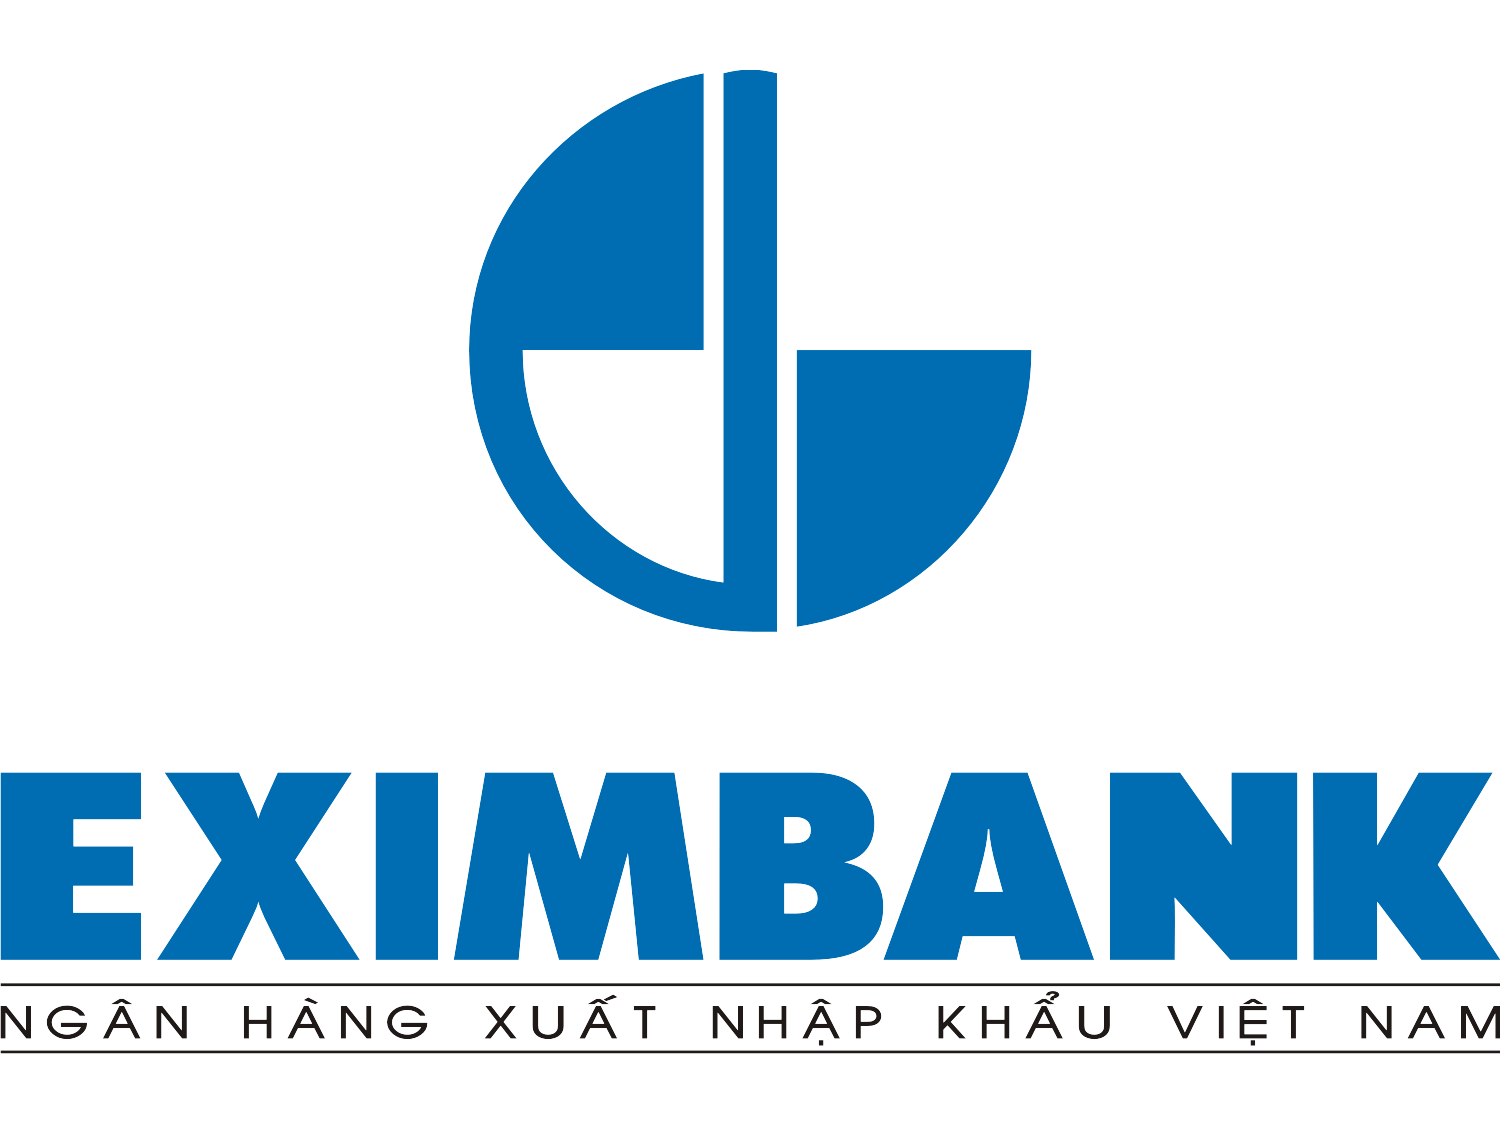 Eximbank tuyển dụng hỗ trợ tín dụng